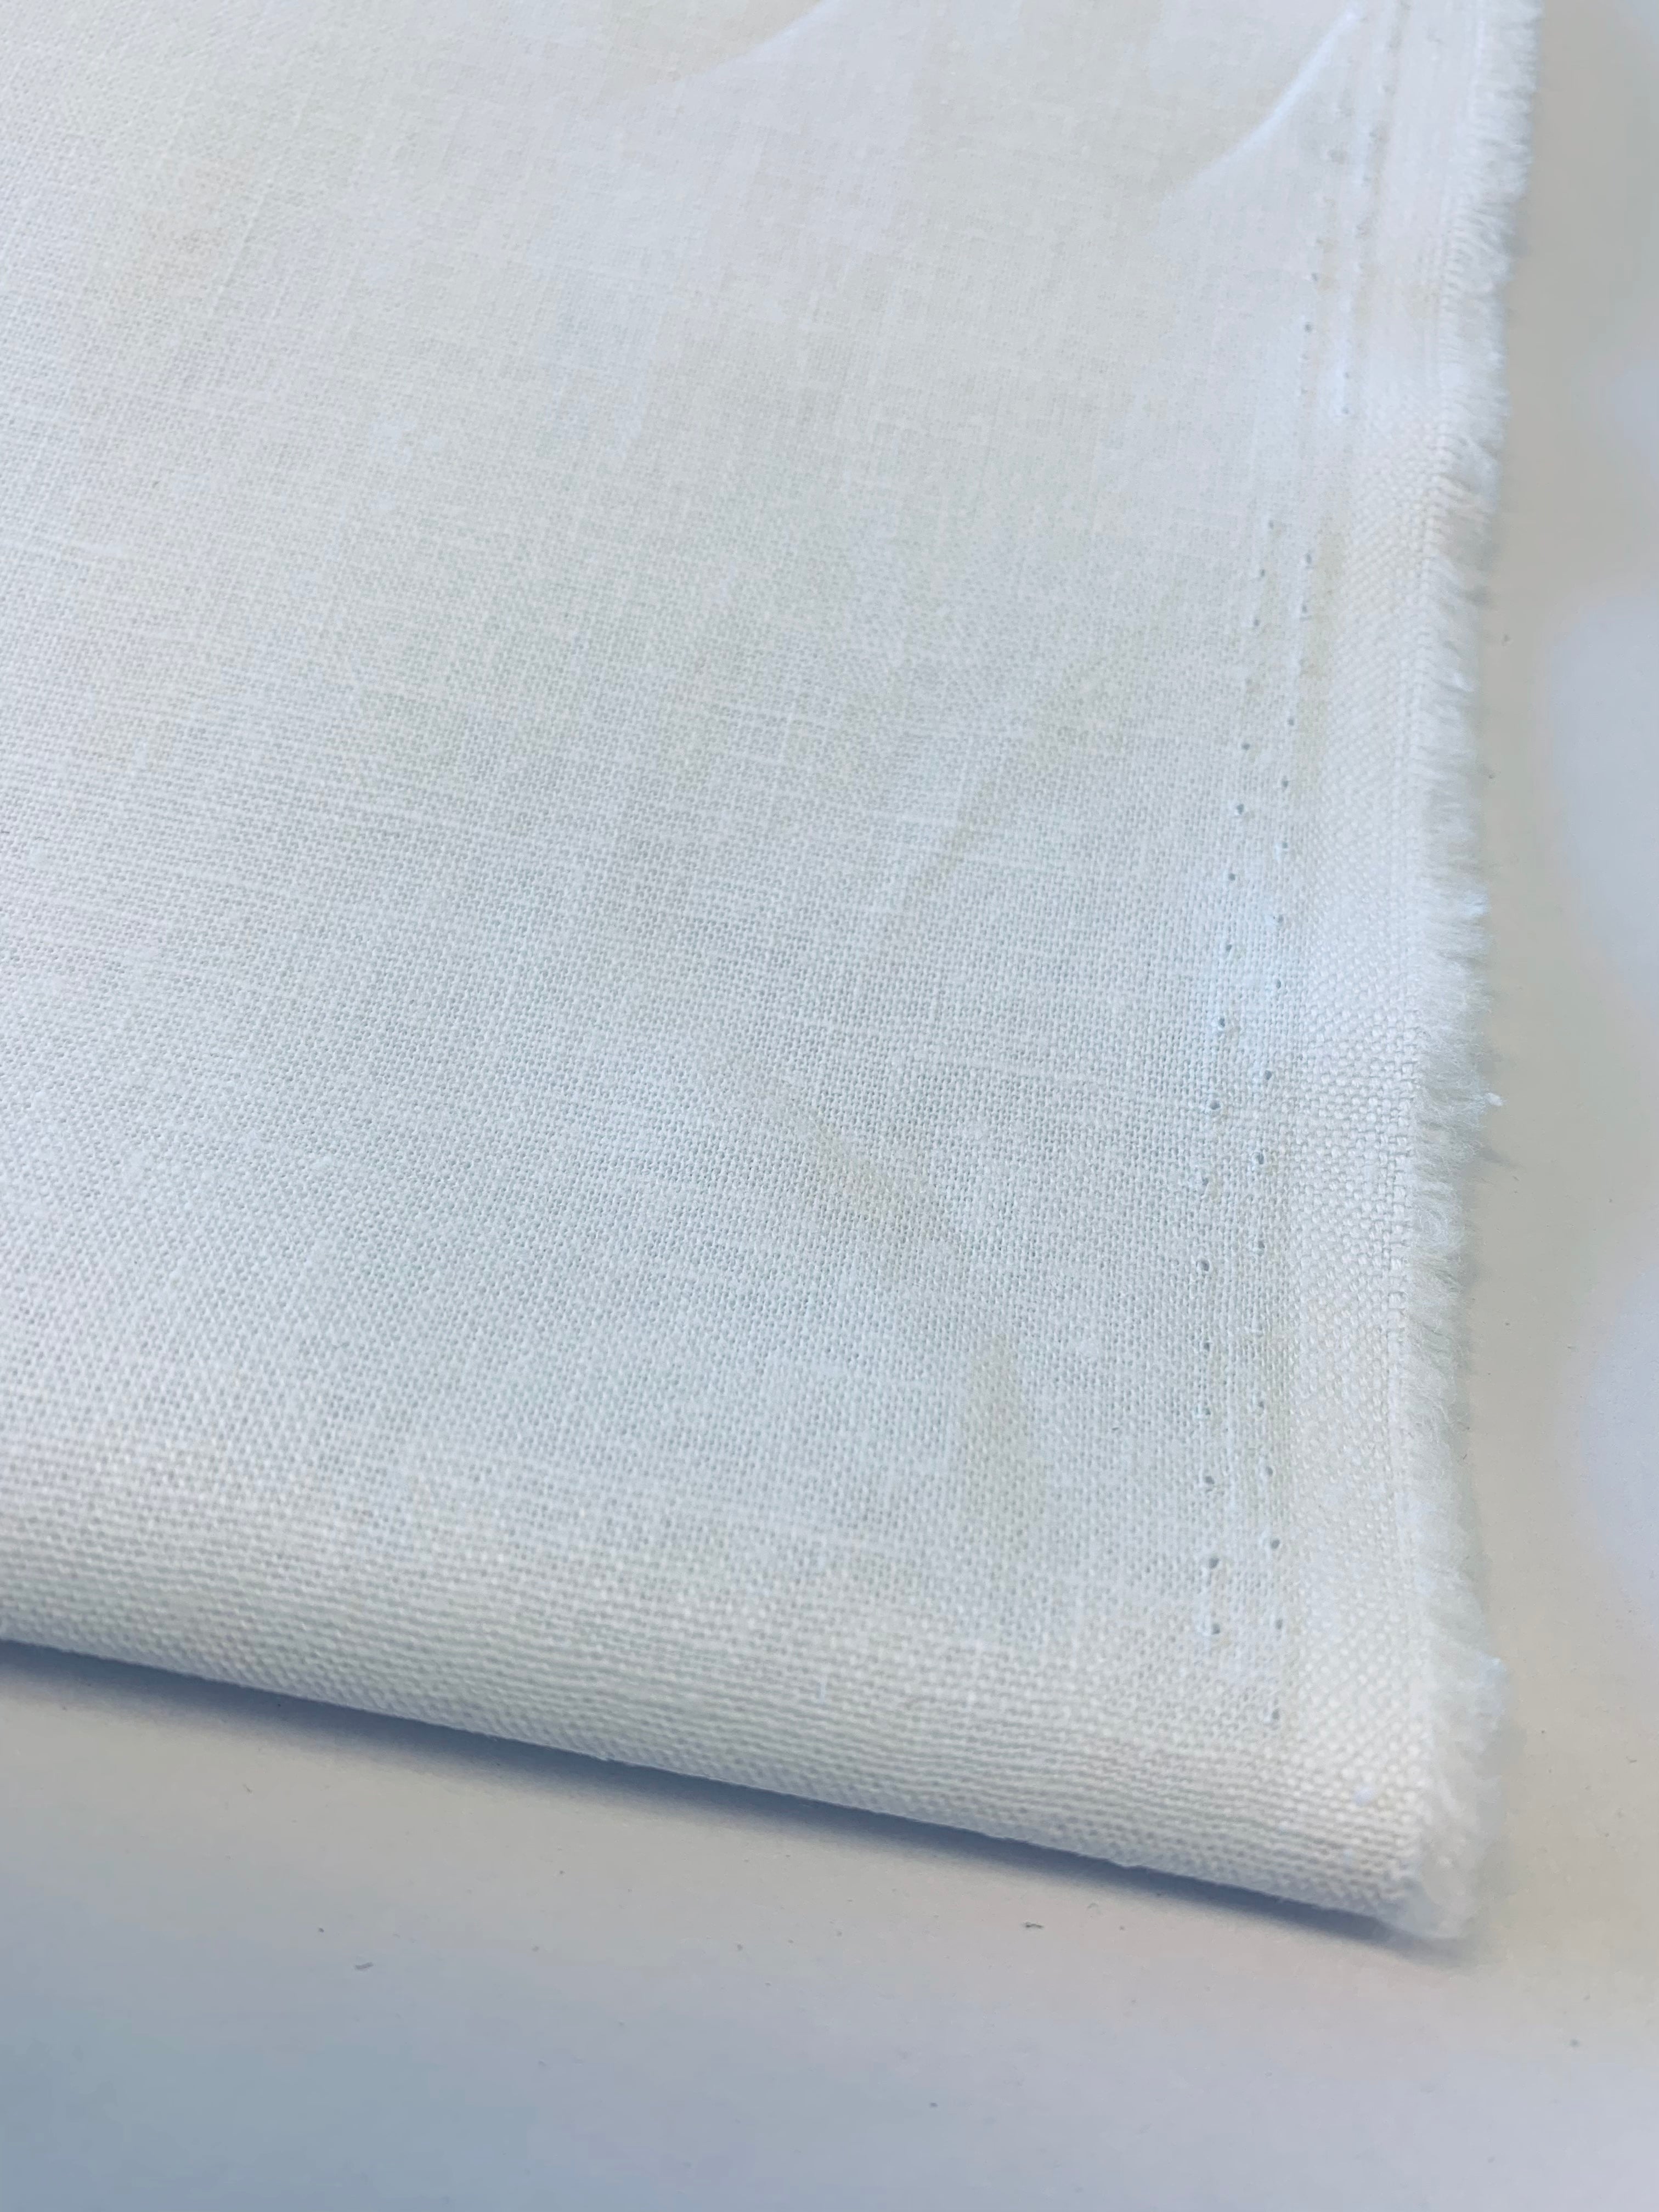 Tangier: Linen/cotton medium weight cloth